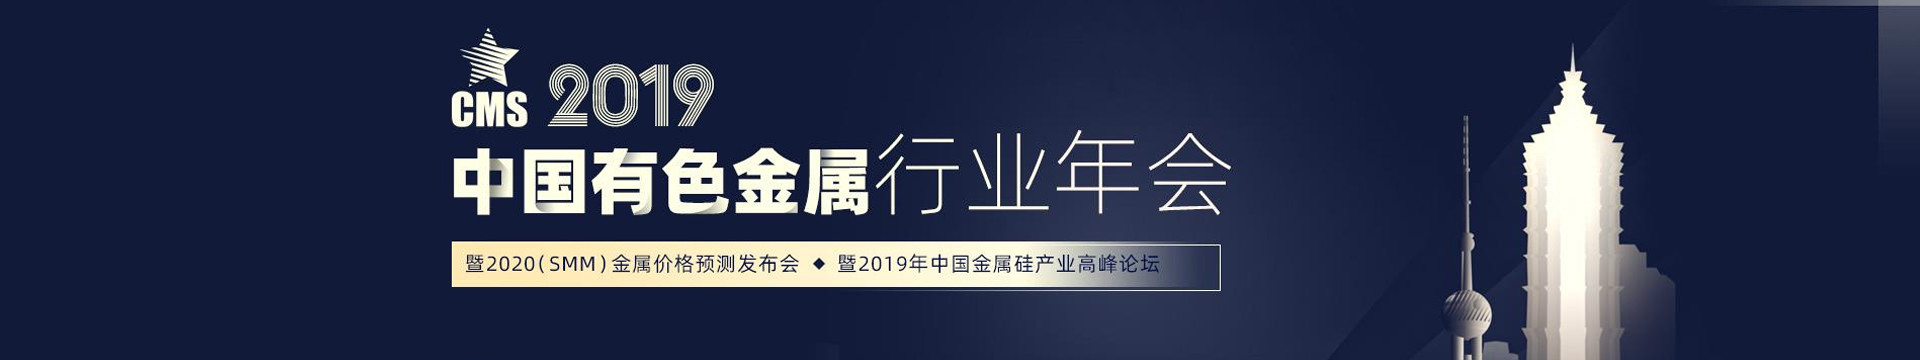 2019中国有色金属行业年会暨2020（SMM）金属价格预测发布会